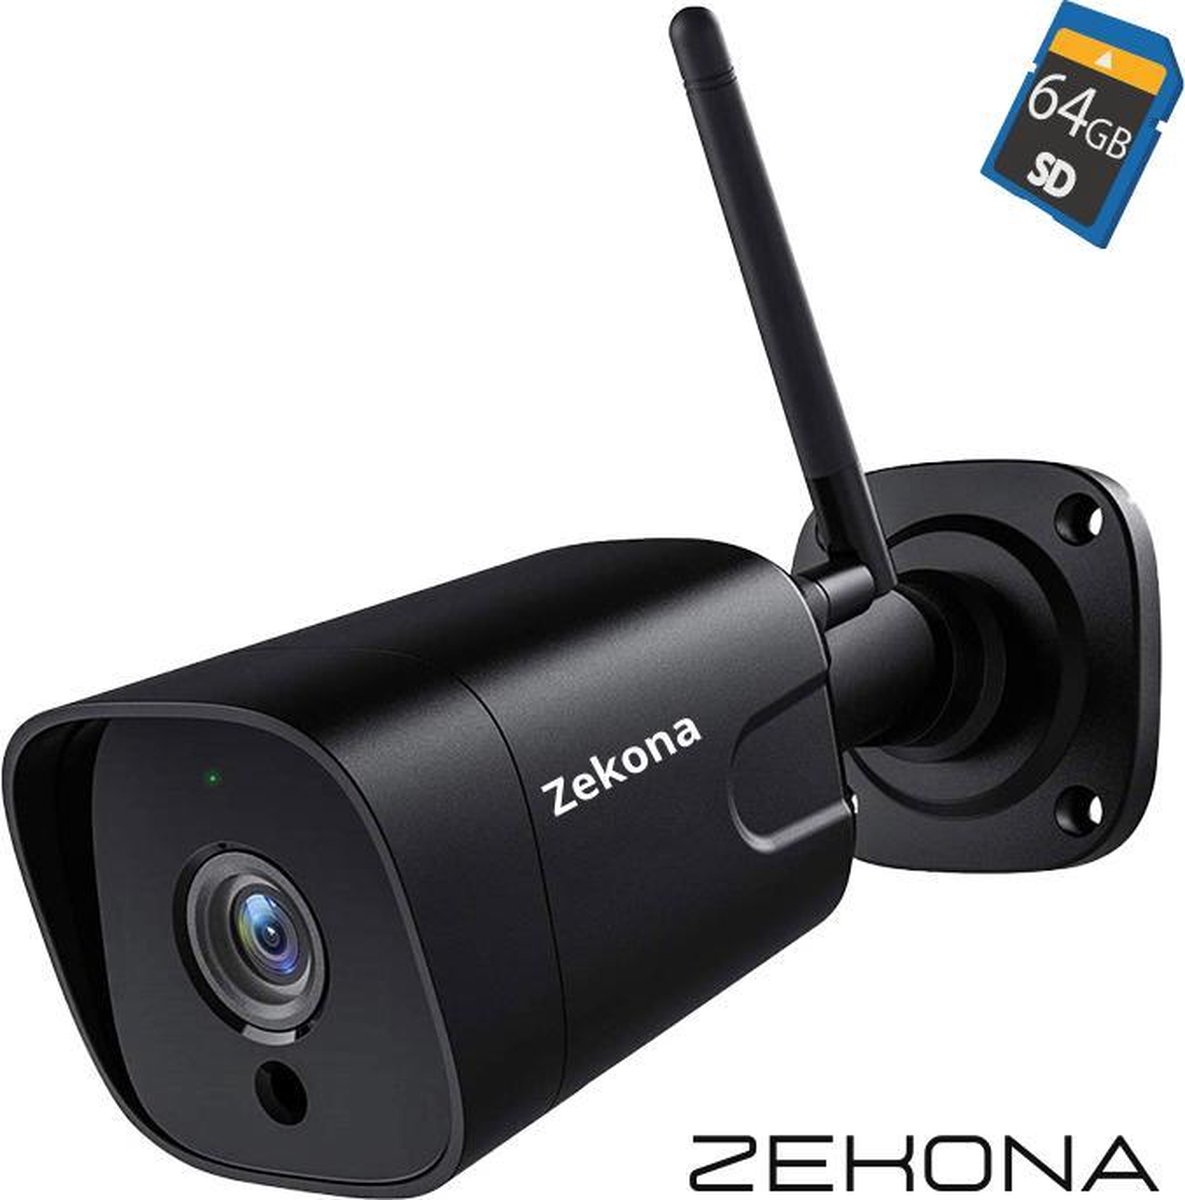 Zekona 30C - 5MP Beveiligingscamera voor Buiten & Binnen - Buitencamera met Nachtzicht tot 25m - Bewakingscamera Draadloos Buiten - Met Stalen Behuizing & IR Nachtvisie - 4x Digitale Zoom - Inclusief 64GB SD Kaart